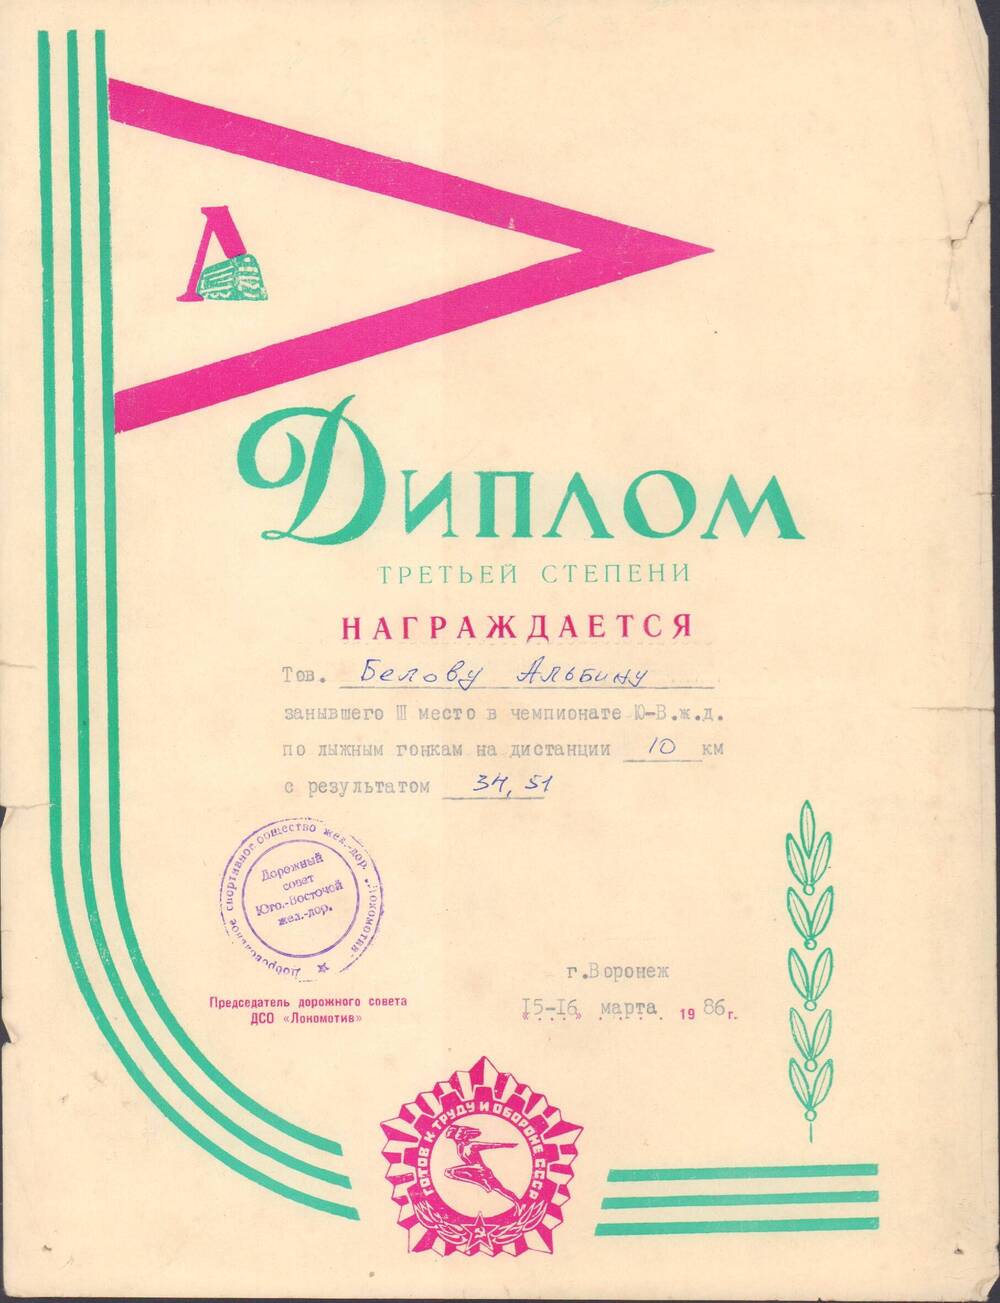 Диплом третьей степени Беловой Альбины, г.Воронеж, 1986 г.